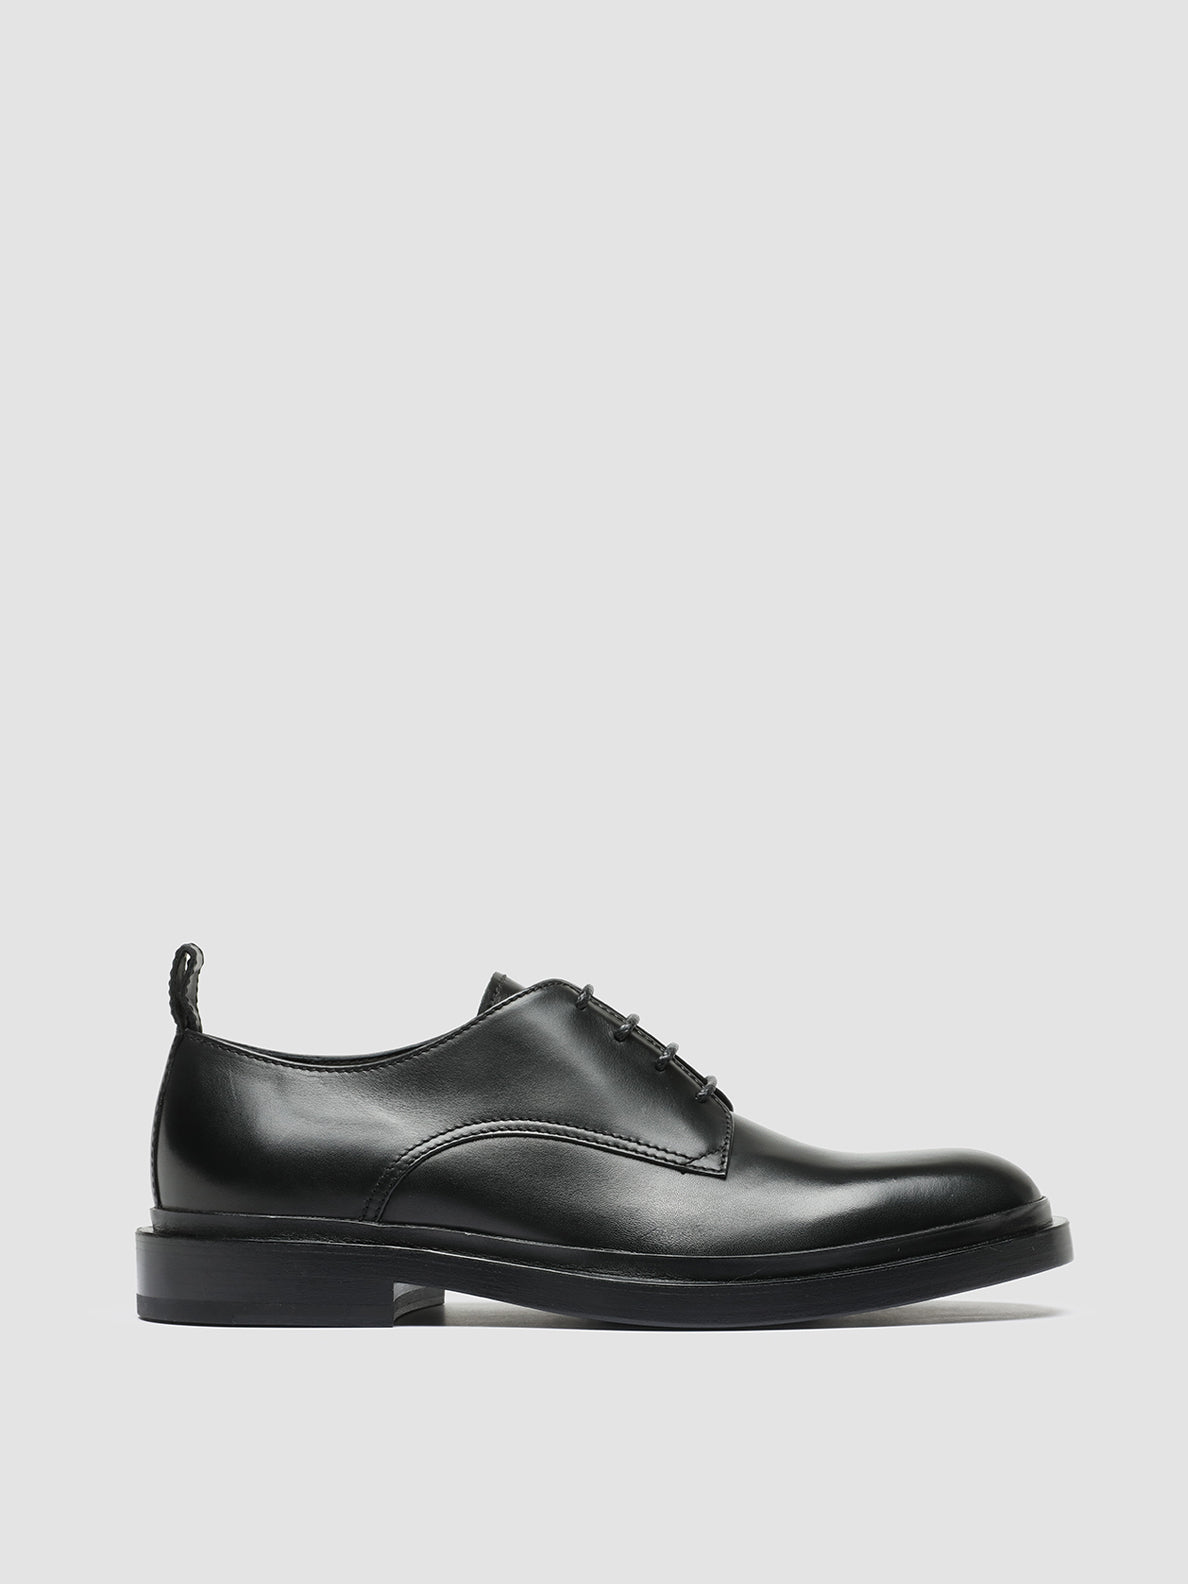 Men's Leather Derby Shoes CONCRETE 003 – Officine Creative EU